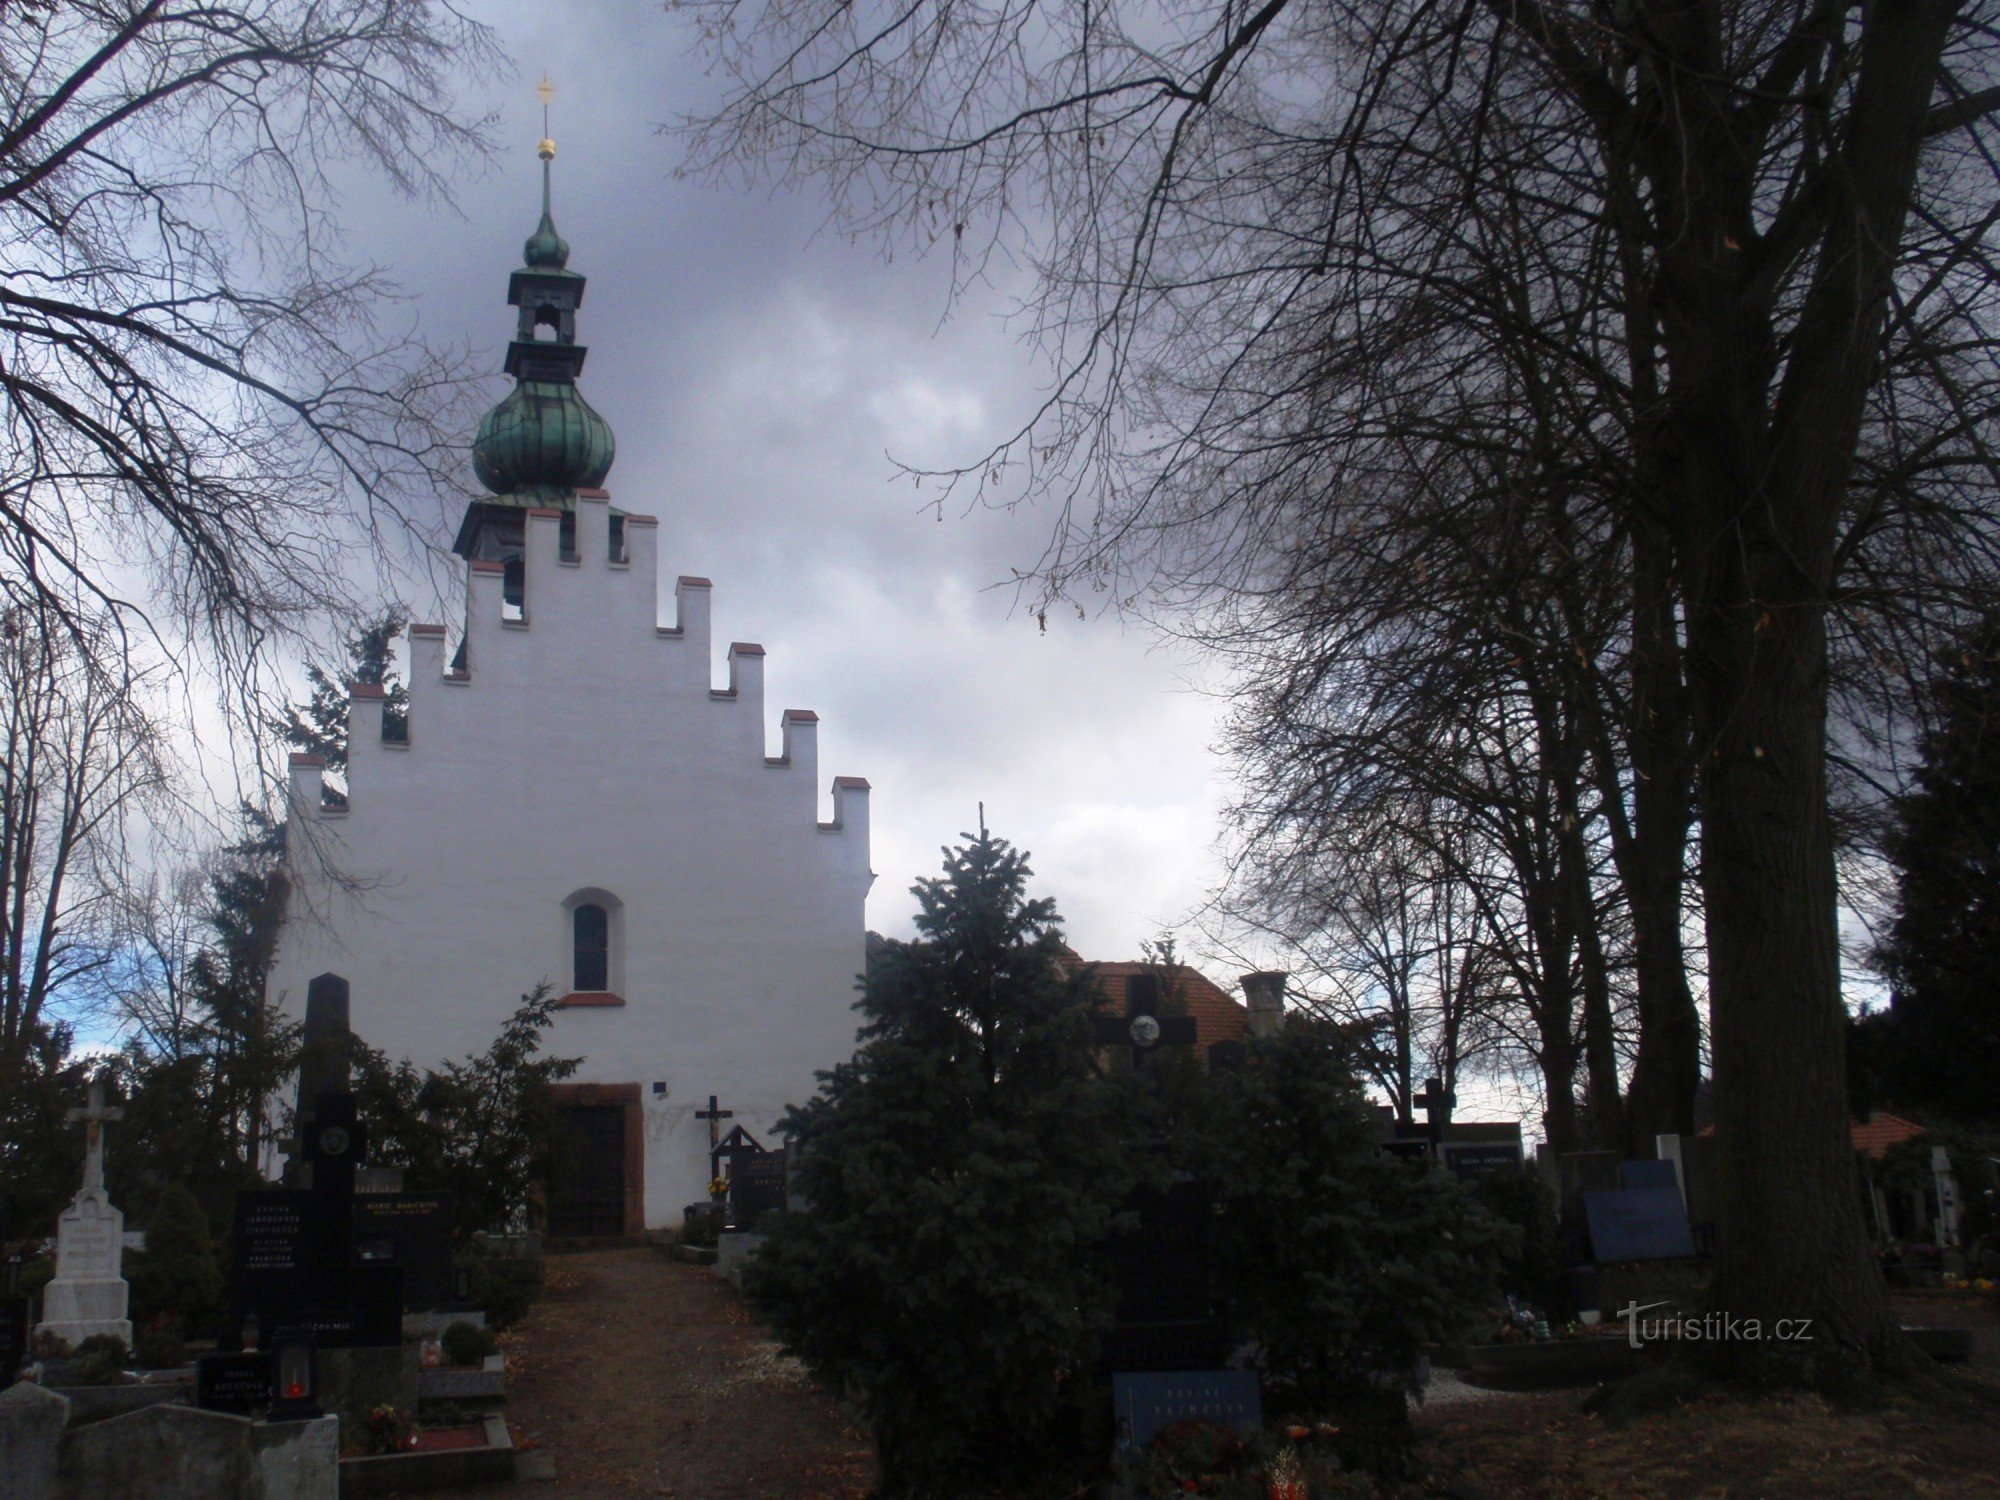 Holy Trinity Cemetery Church in Předklášteří